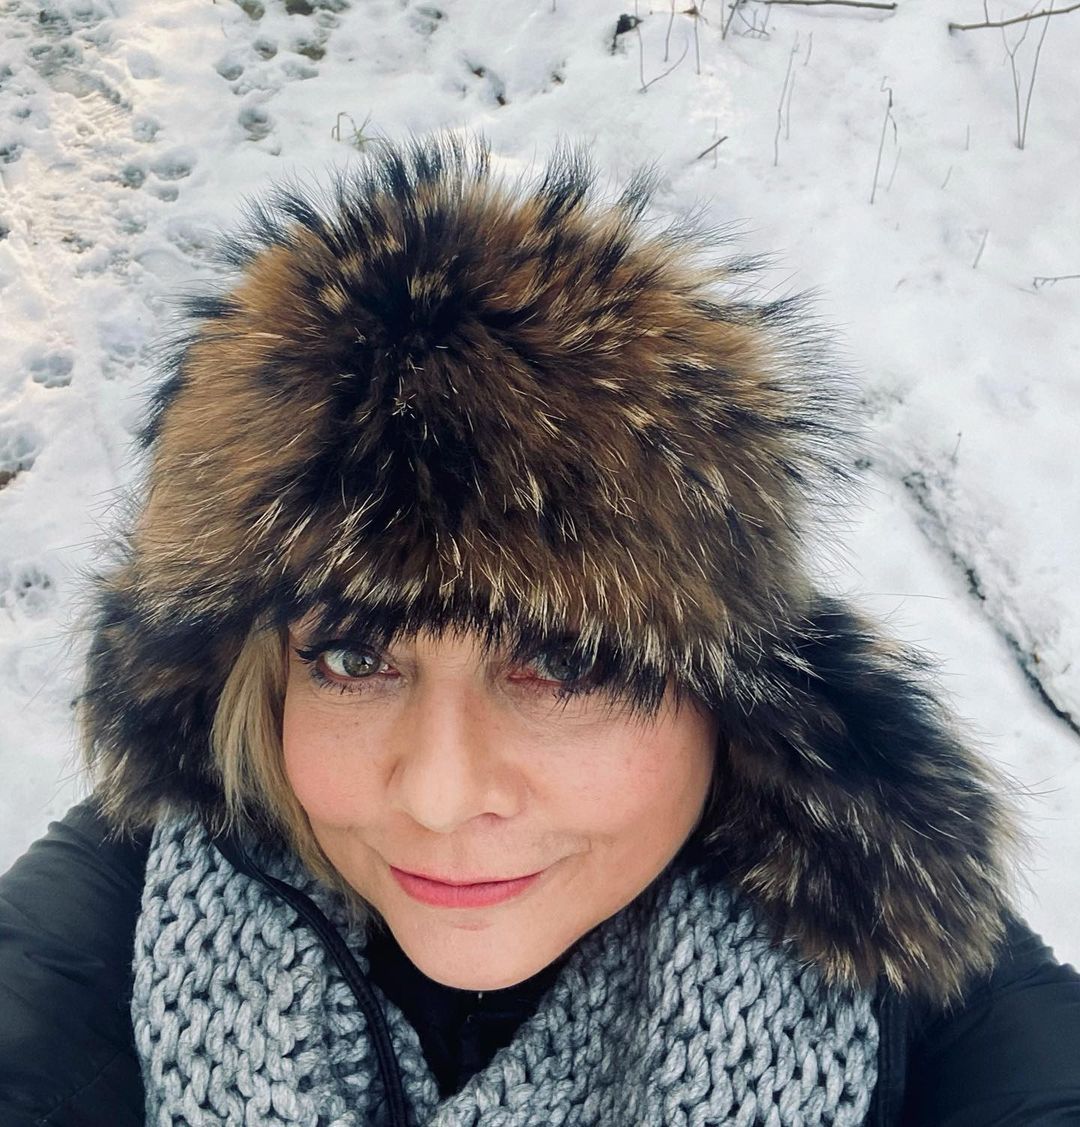 Małgorzata Ostrowska-Królikowska selfie na śniegu